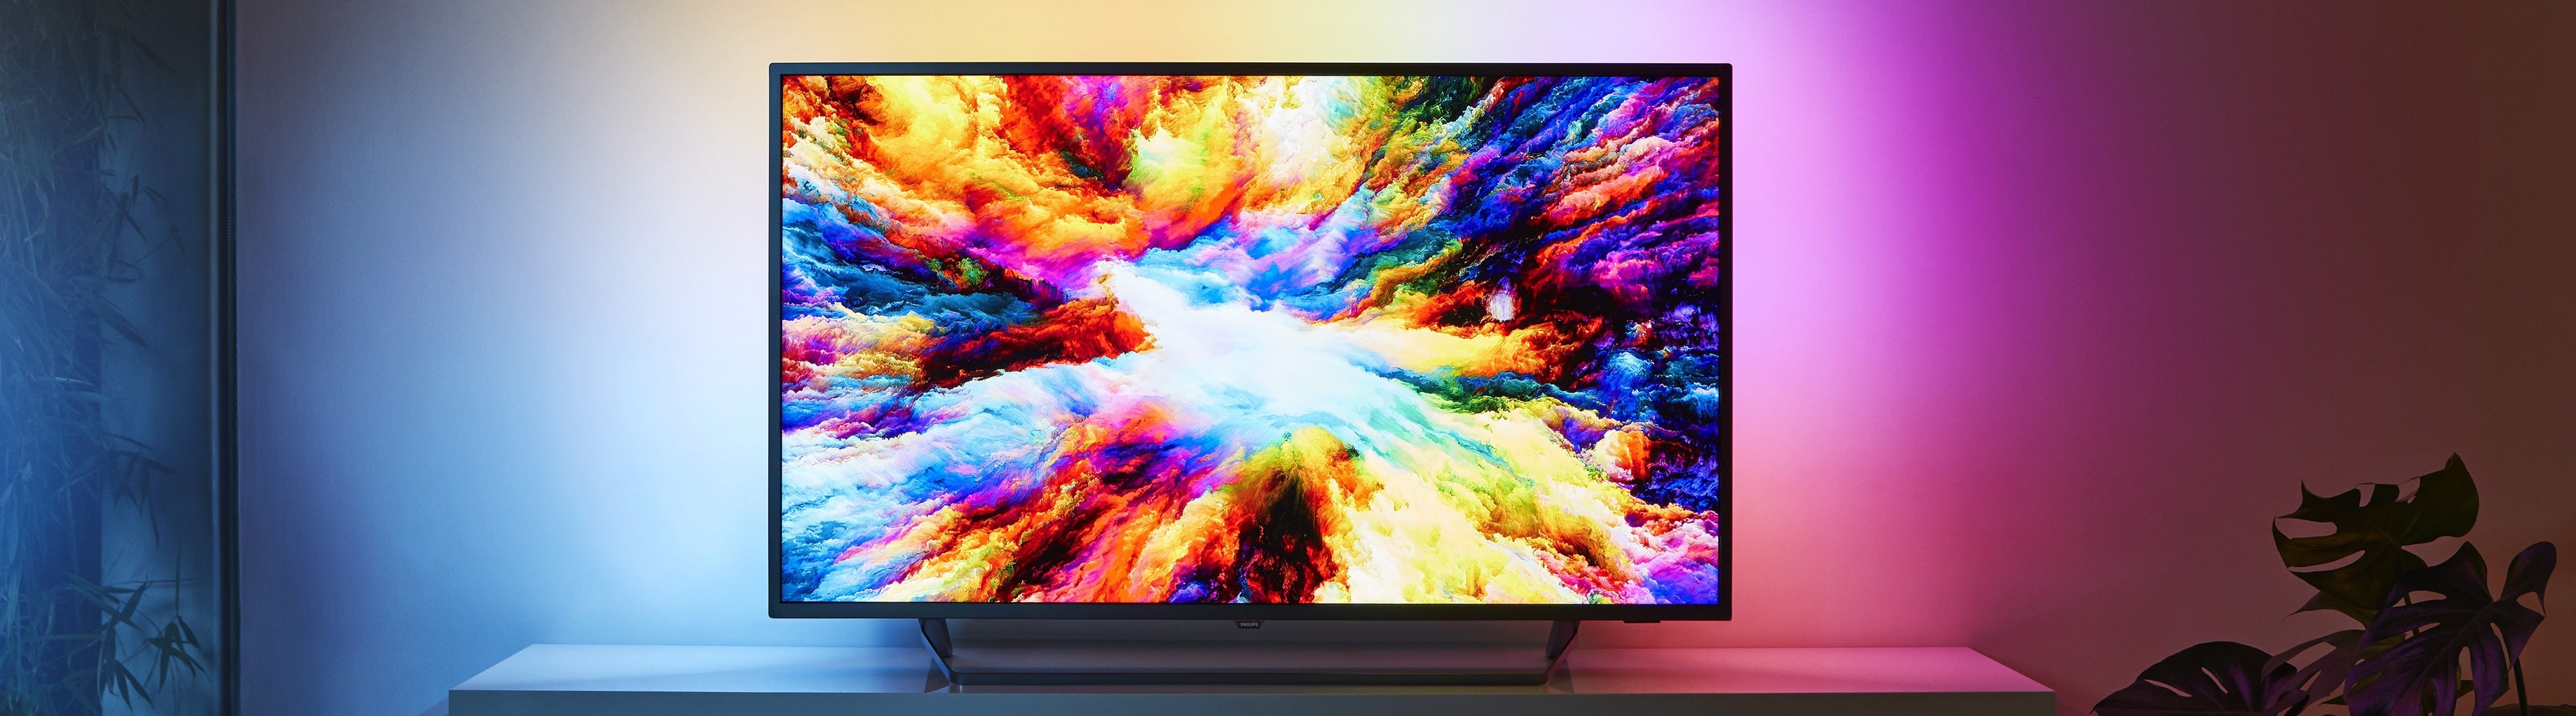 Какой телевизор OLED лучше?